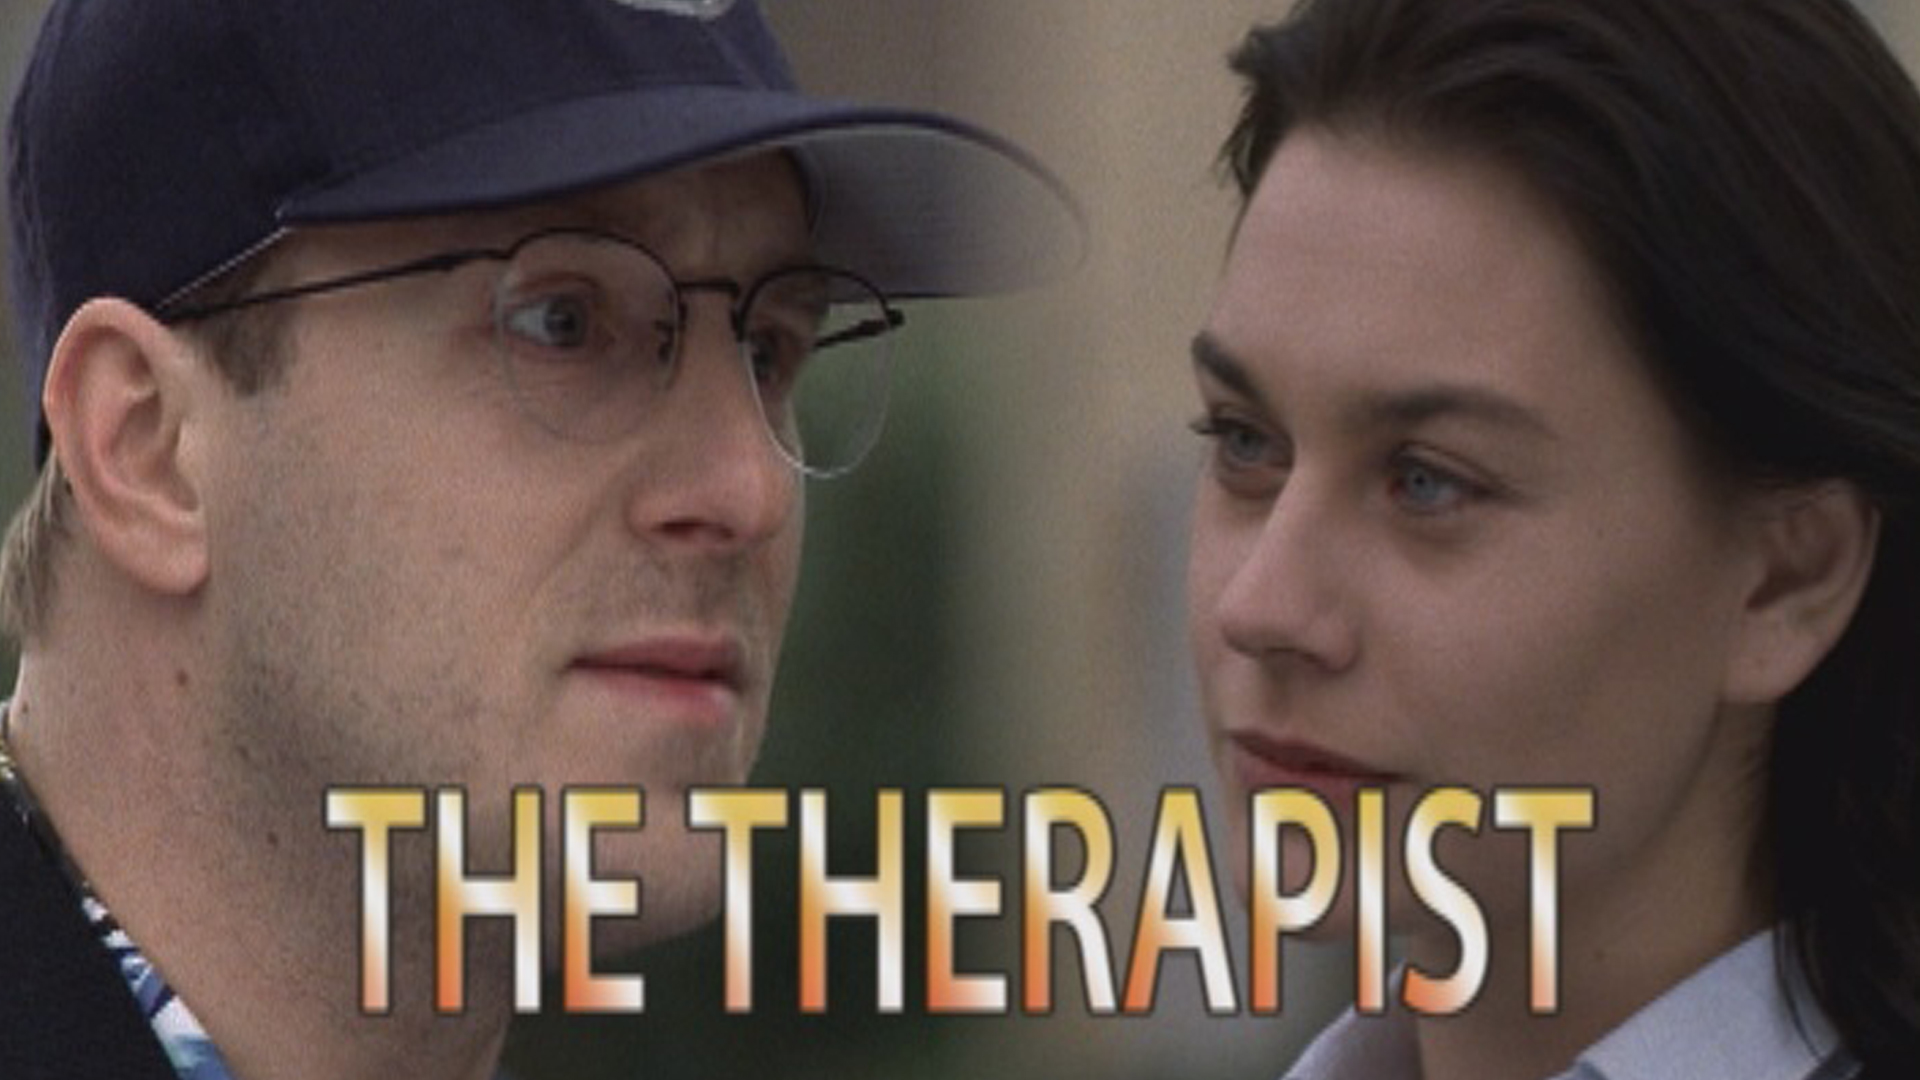 小丑尼克(原声版)
		
	
    
        The Therapist